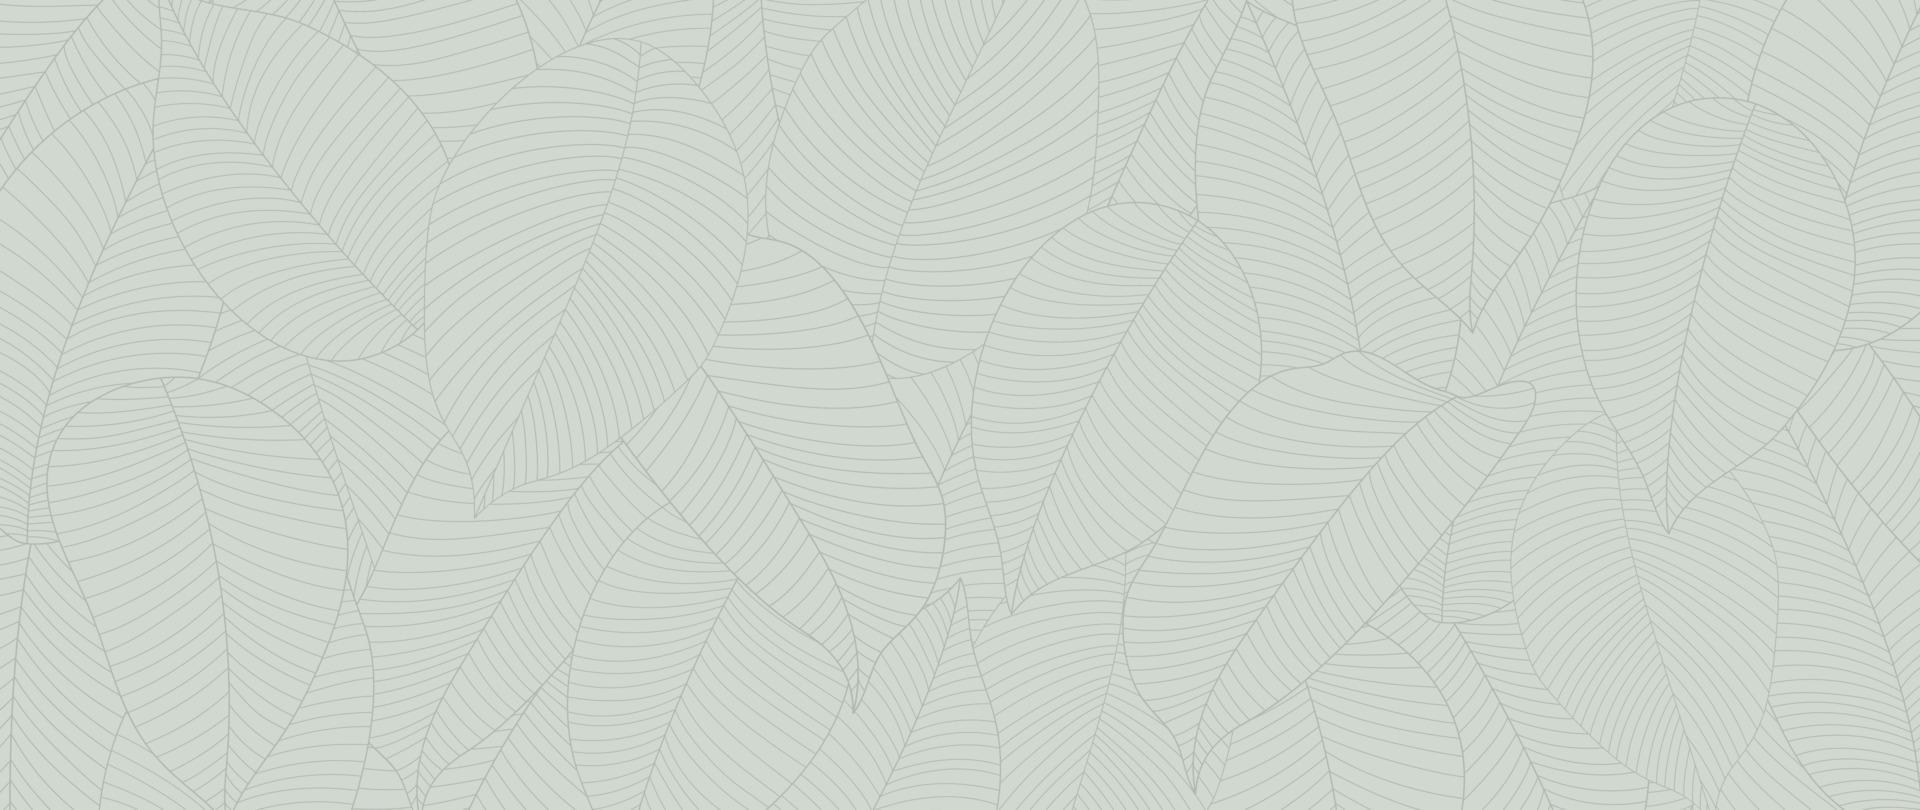 botánico hoja línea Arte fondo de pantalla antecedentes vector. lujo natural mano dibujado follaje modelo diseño en minimalista lineal contorno sencillo estilo. diseño para tela, imprimir, cubrir, bandera, invitación. vector